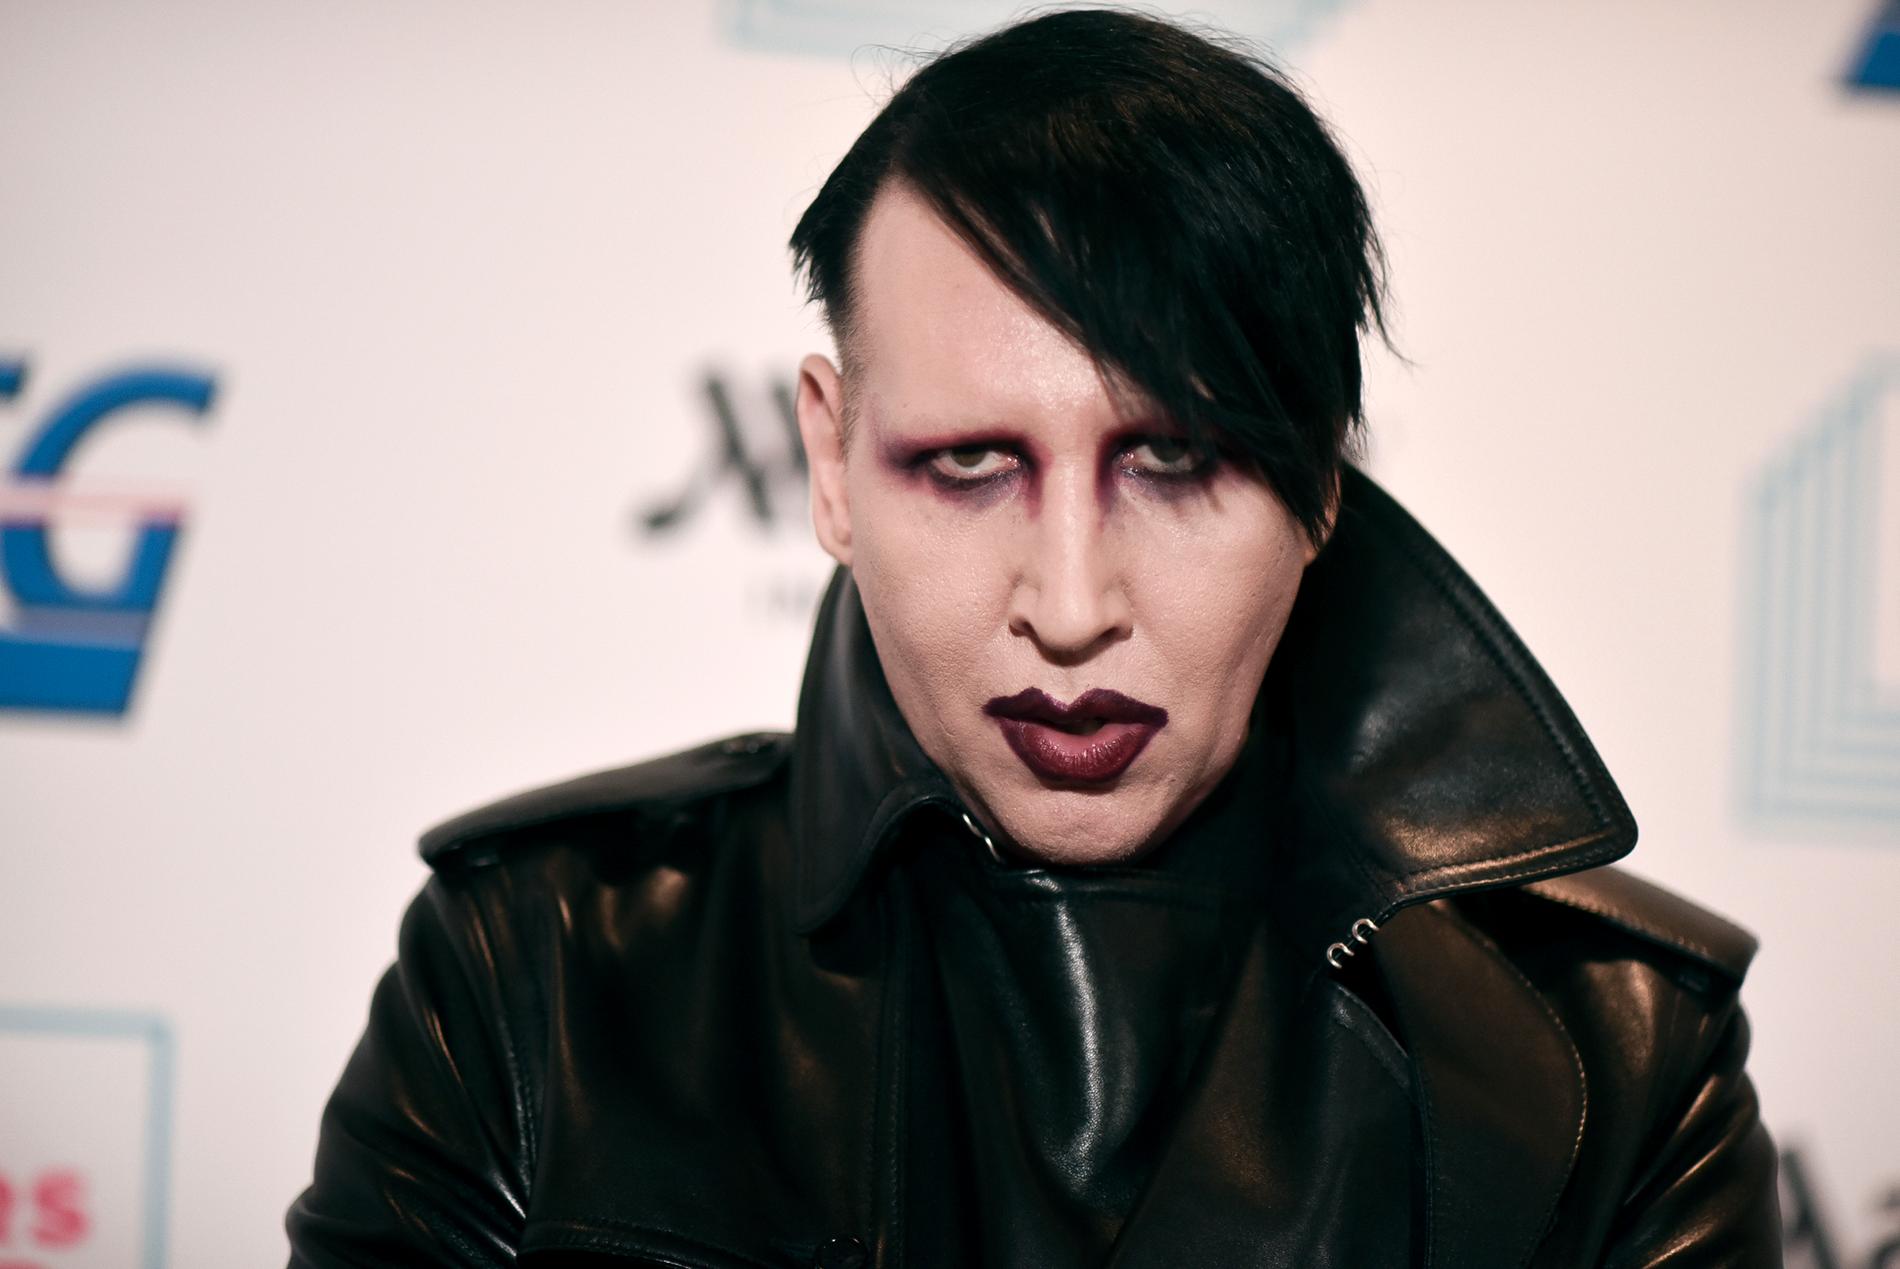 Marilyn Manson utreds av polis efter misshandelsanklagelser. Arkivbild.